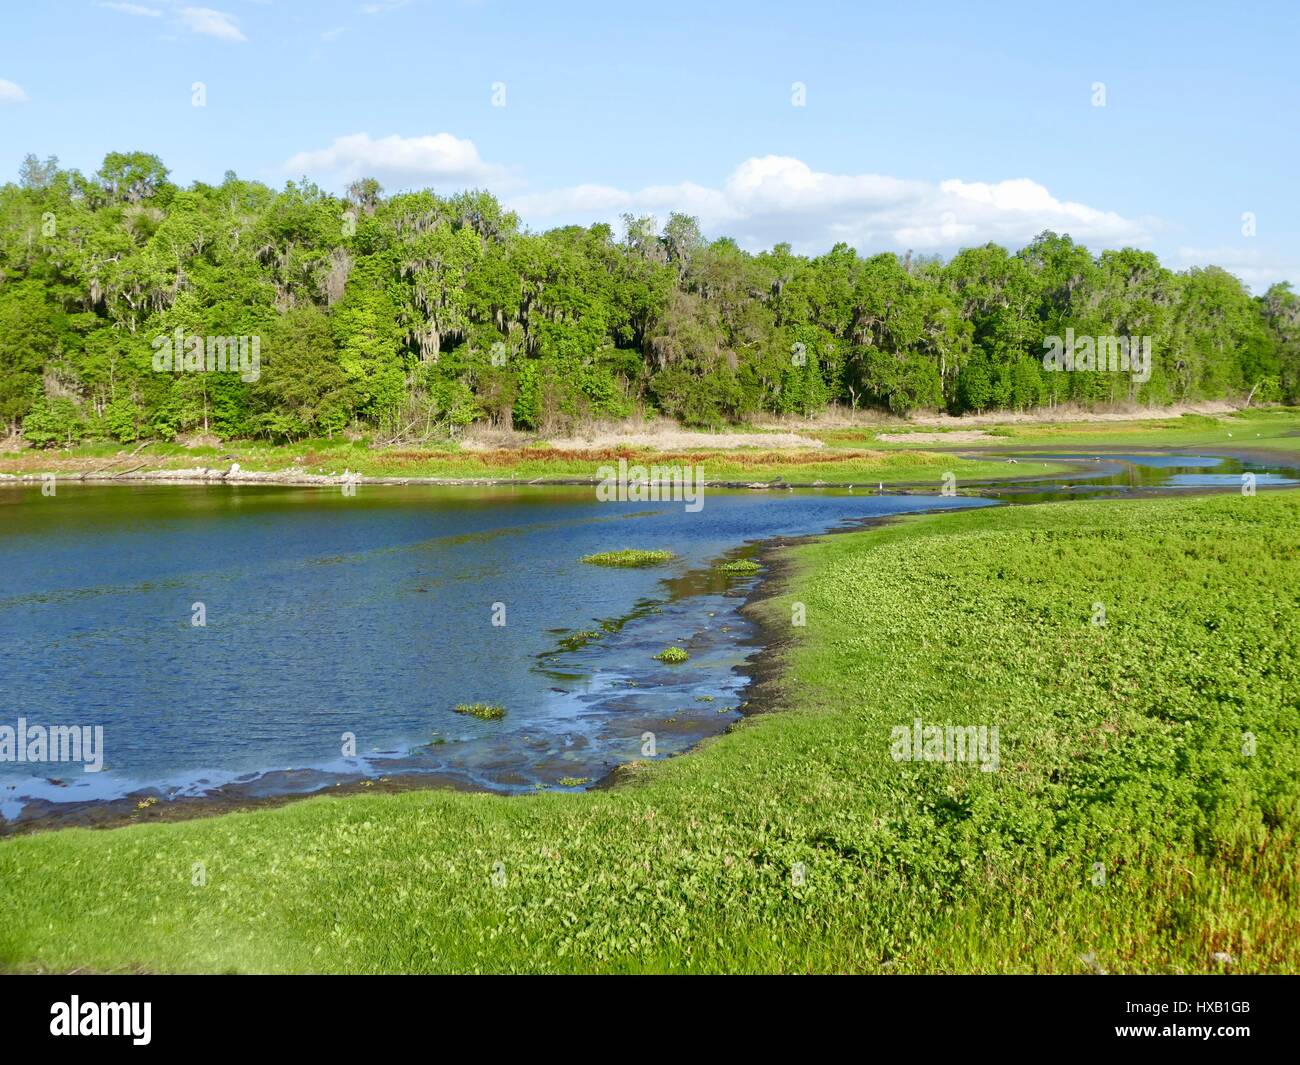 Floride Nord paysage avec lac, feuillus et conifères, et reflet dans l'eau. Paynes Prairie Preserve State Park, Gainesville, FL, USA Banque D'Images